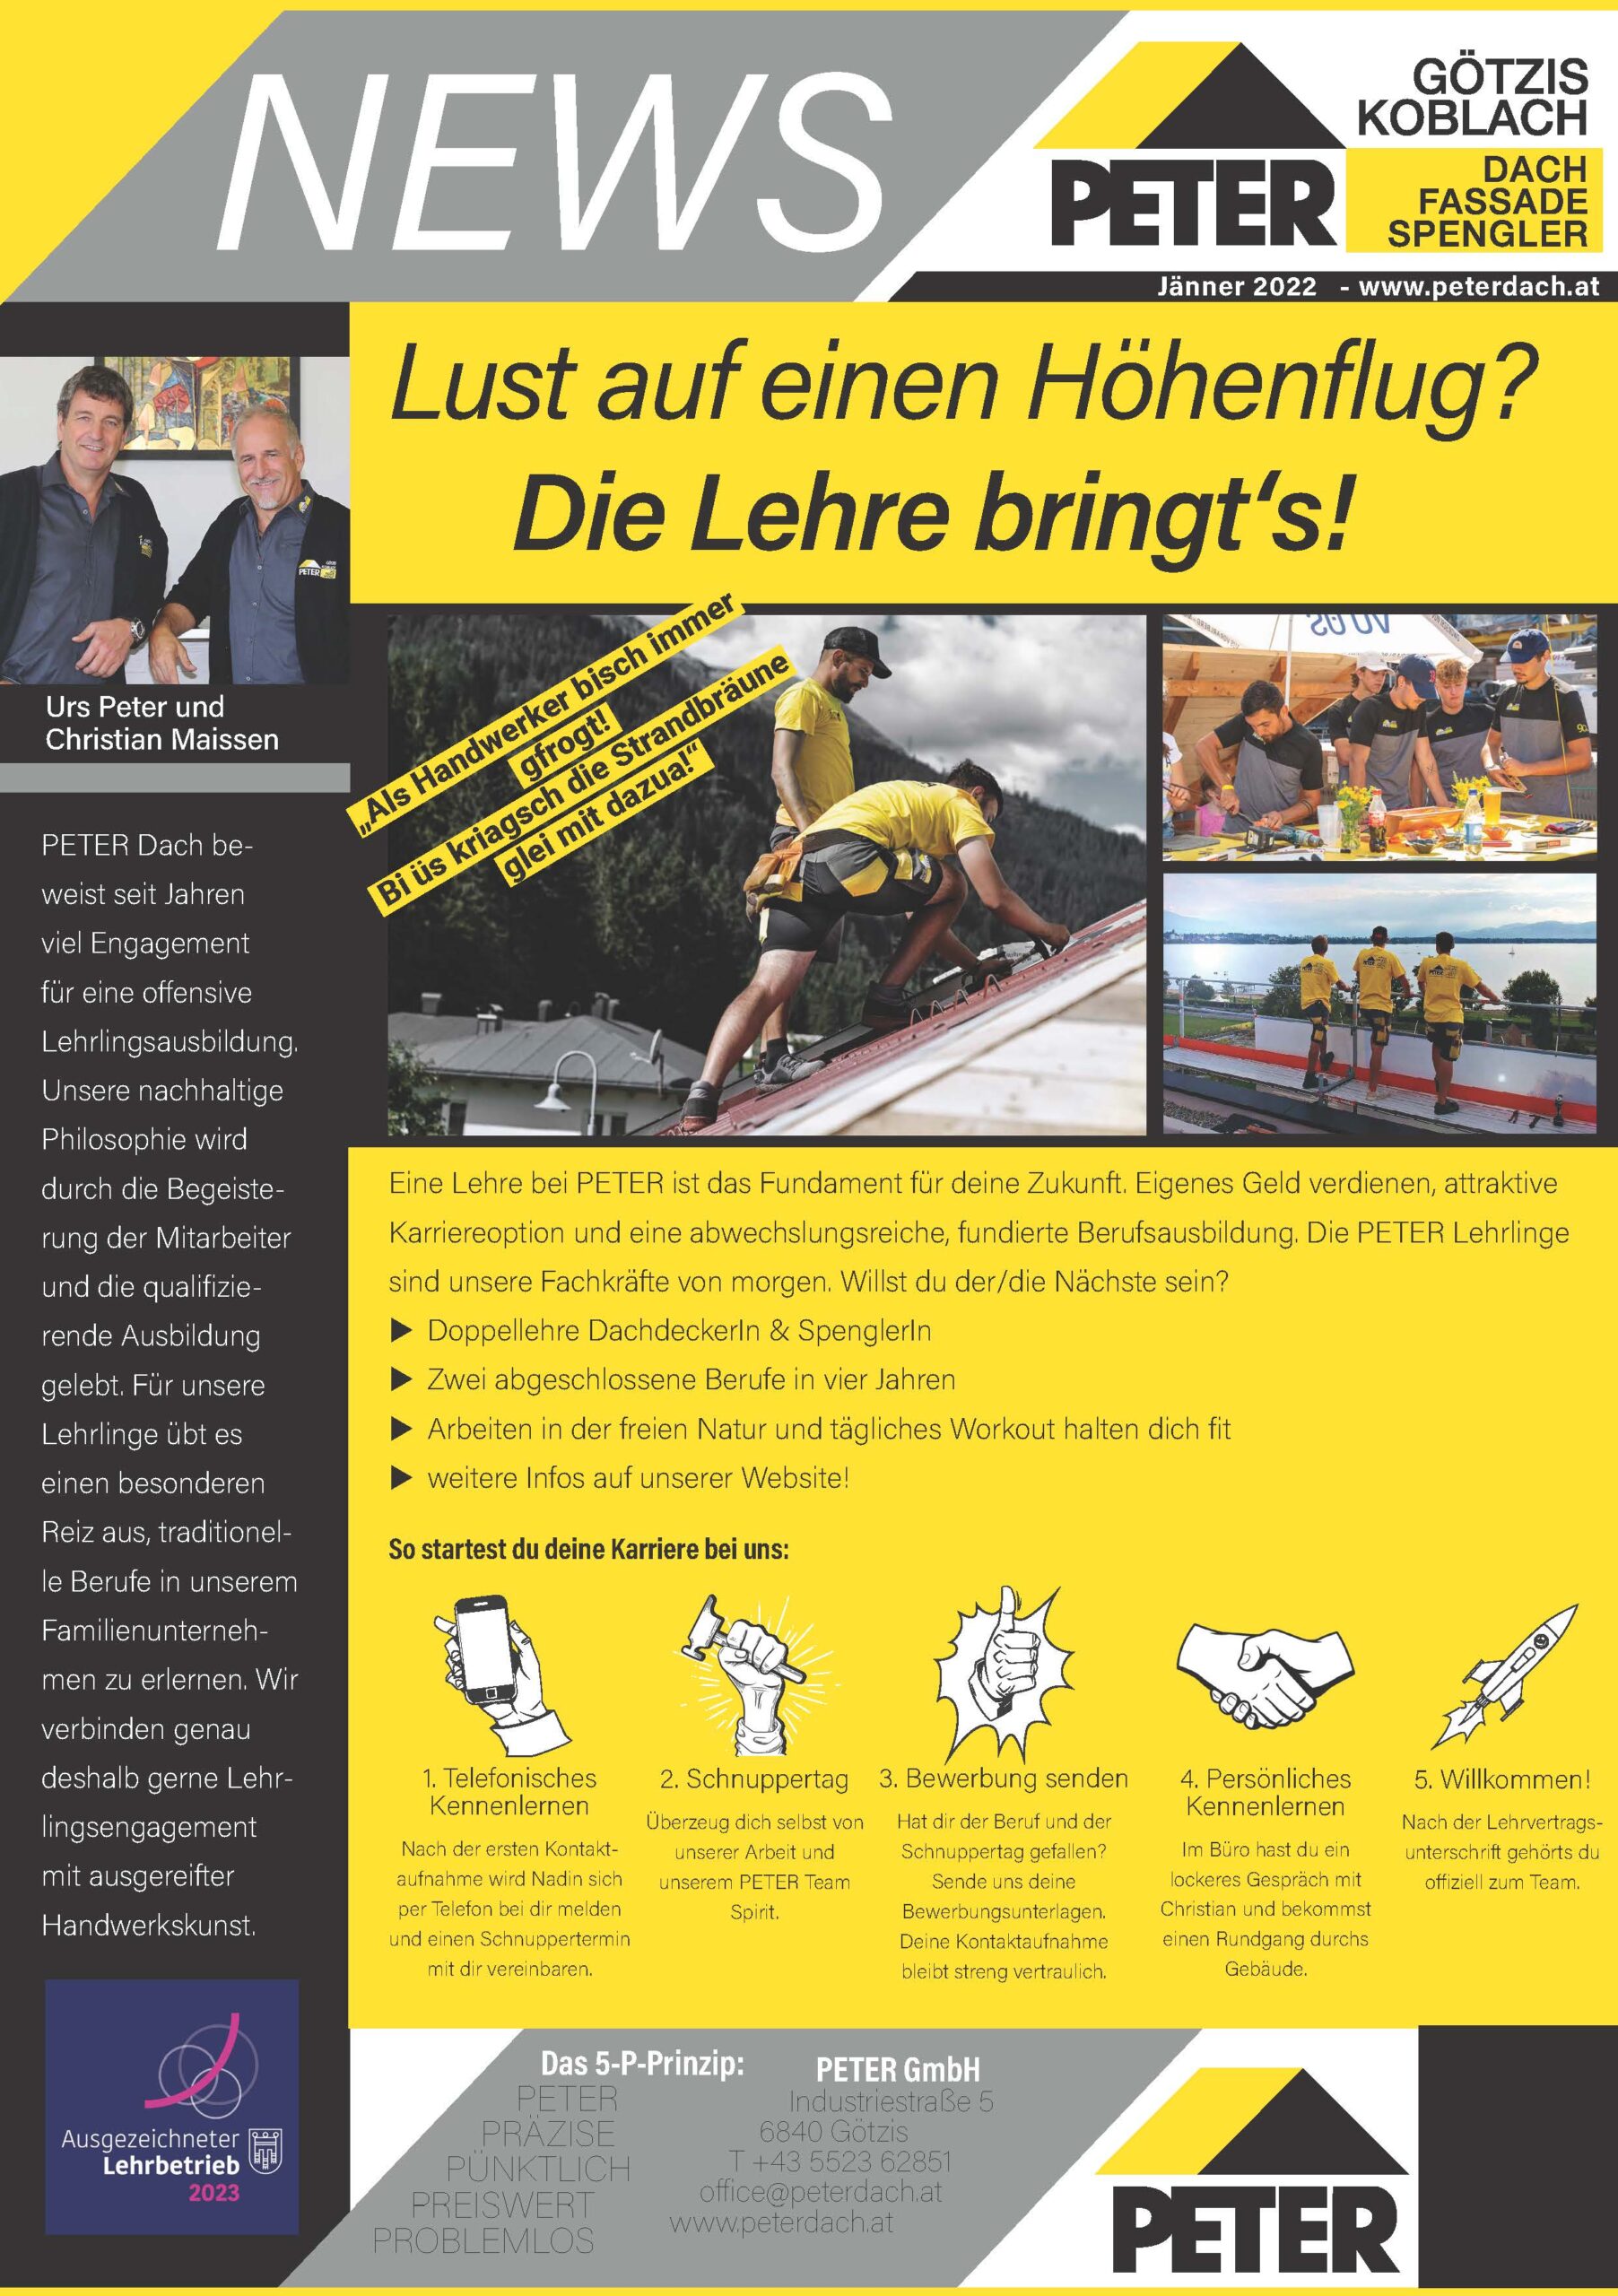 Peter-Dach-Peter-News-Lehre-Rheintal-Vorarlberg-Götzis-Jänner-22